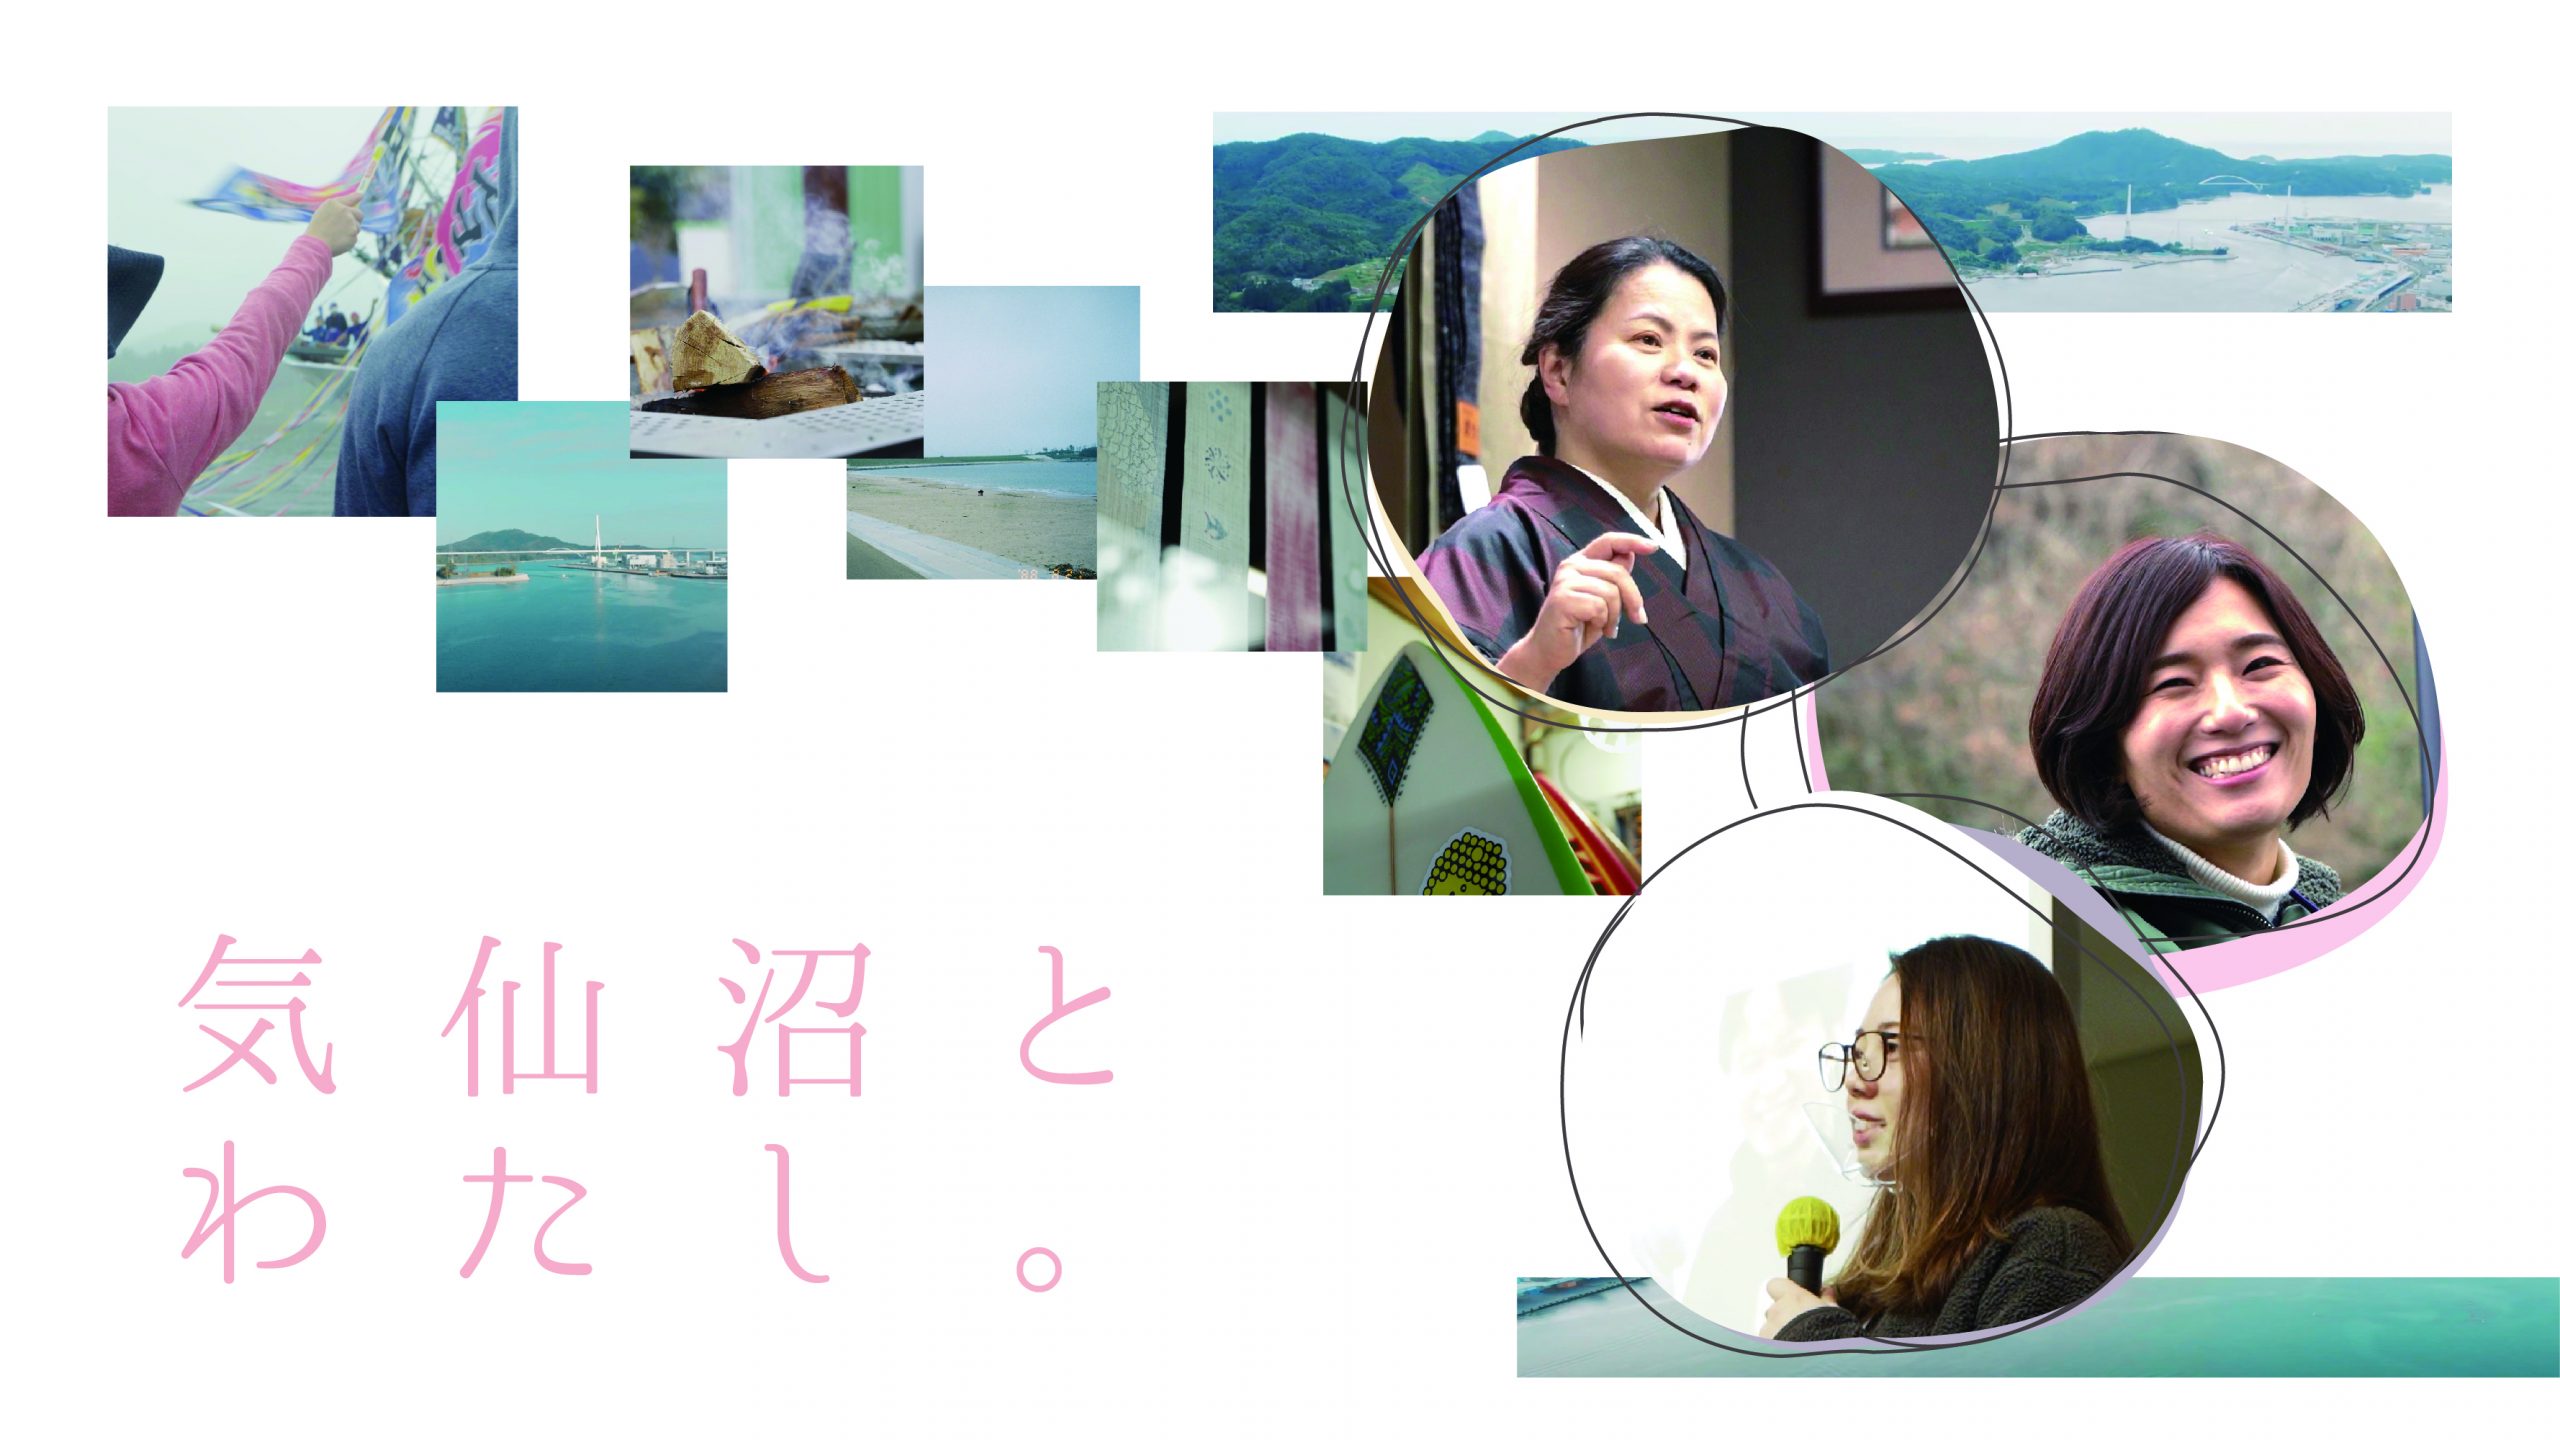 宮城県移住PR動画「気仙沼とわたし。」が公開されました！